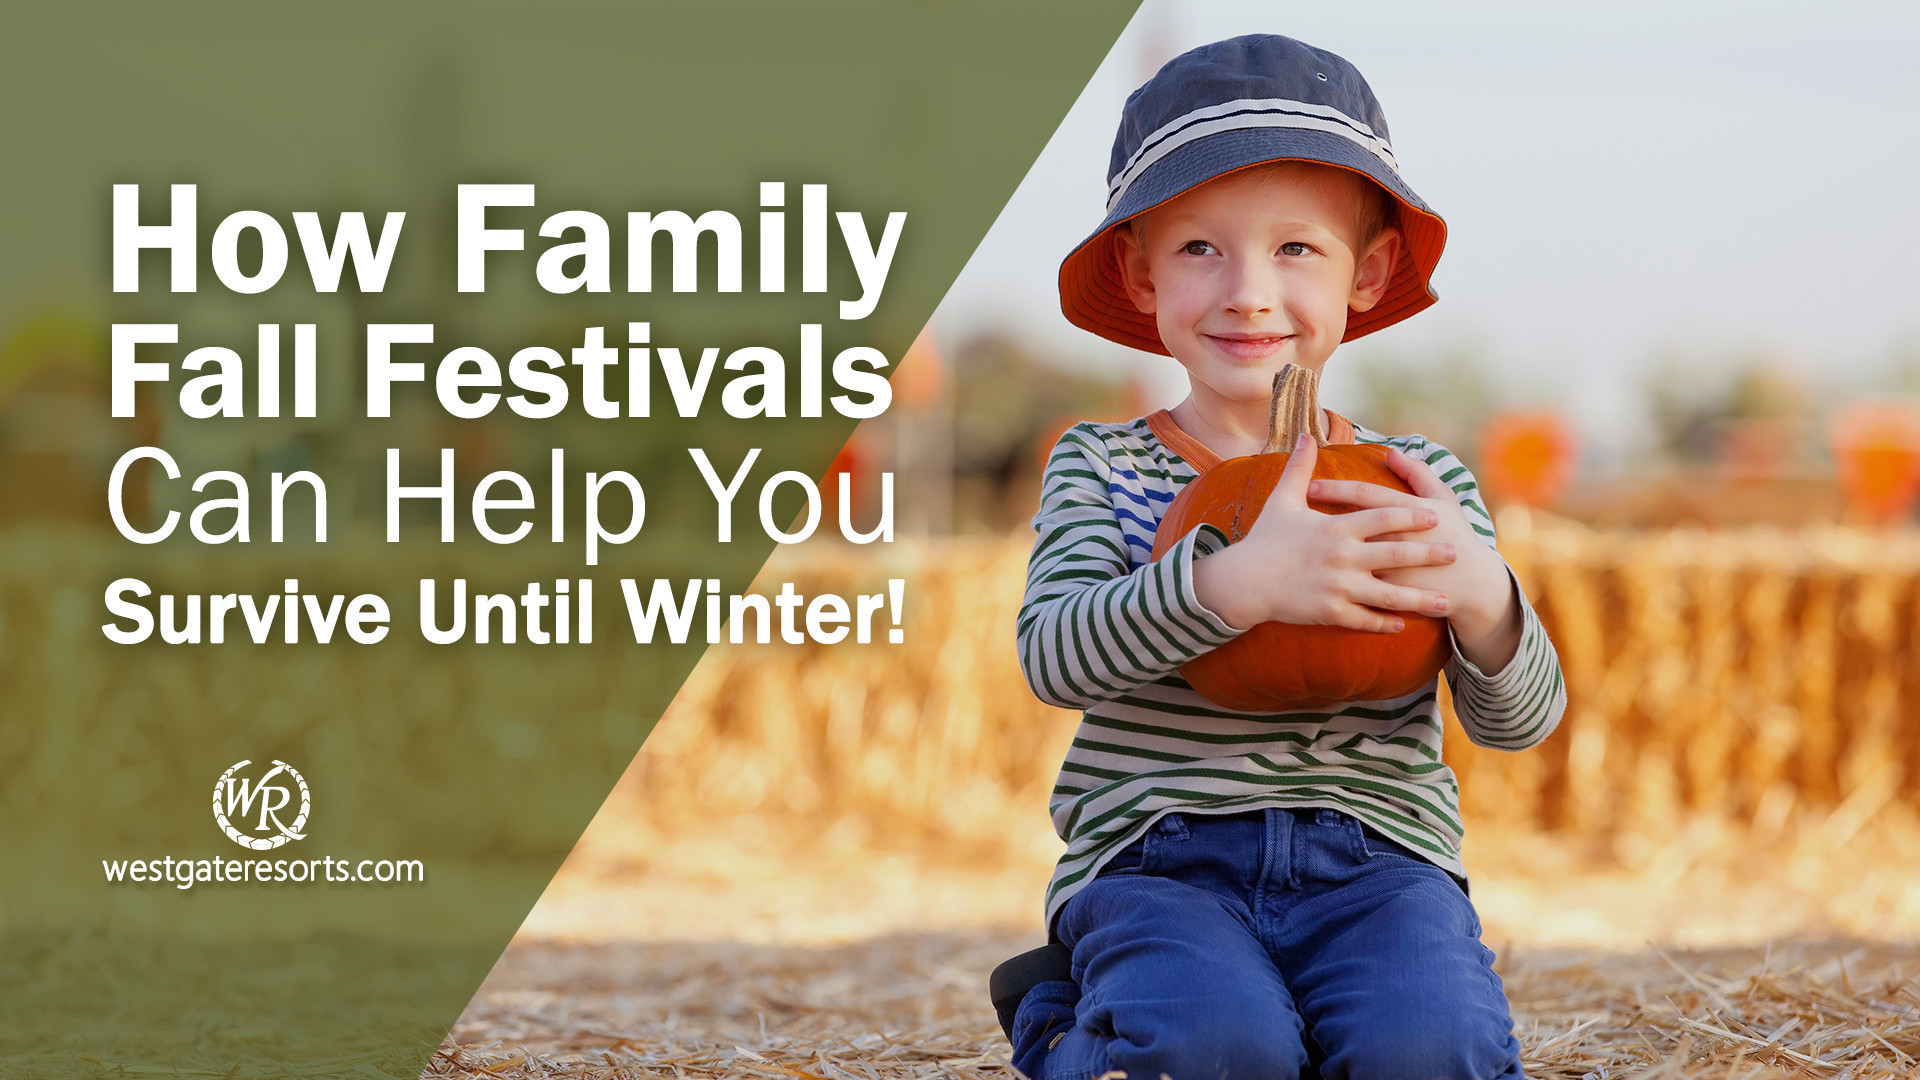 ¡Cómo los festivales familiares de otoño pueden ayudarlo a sobrevivir! | Actividades del Festival de Otoño | Resorts en Westgate